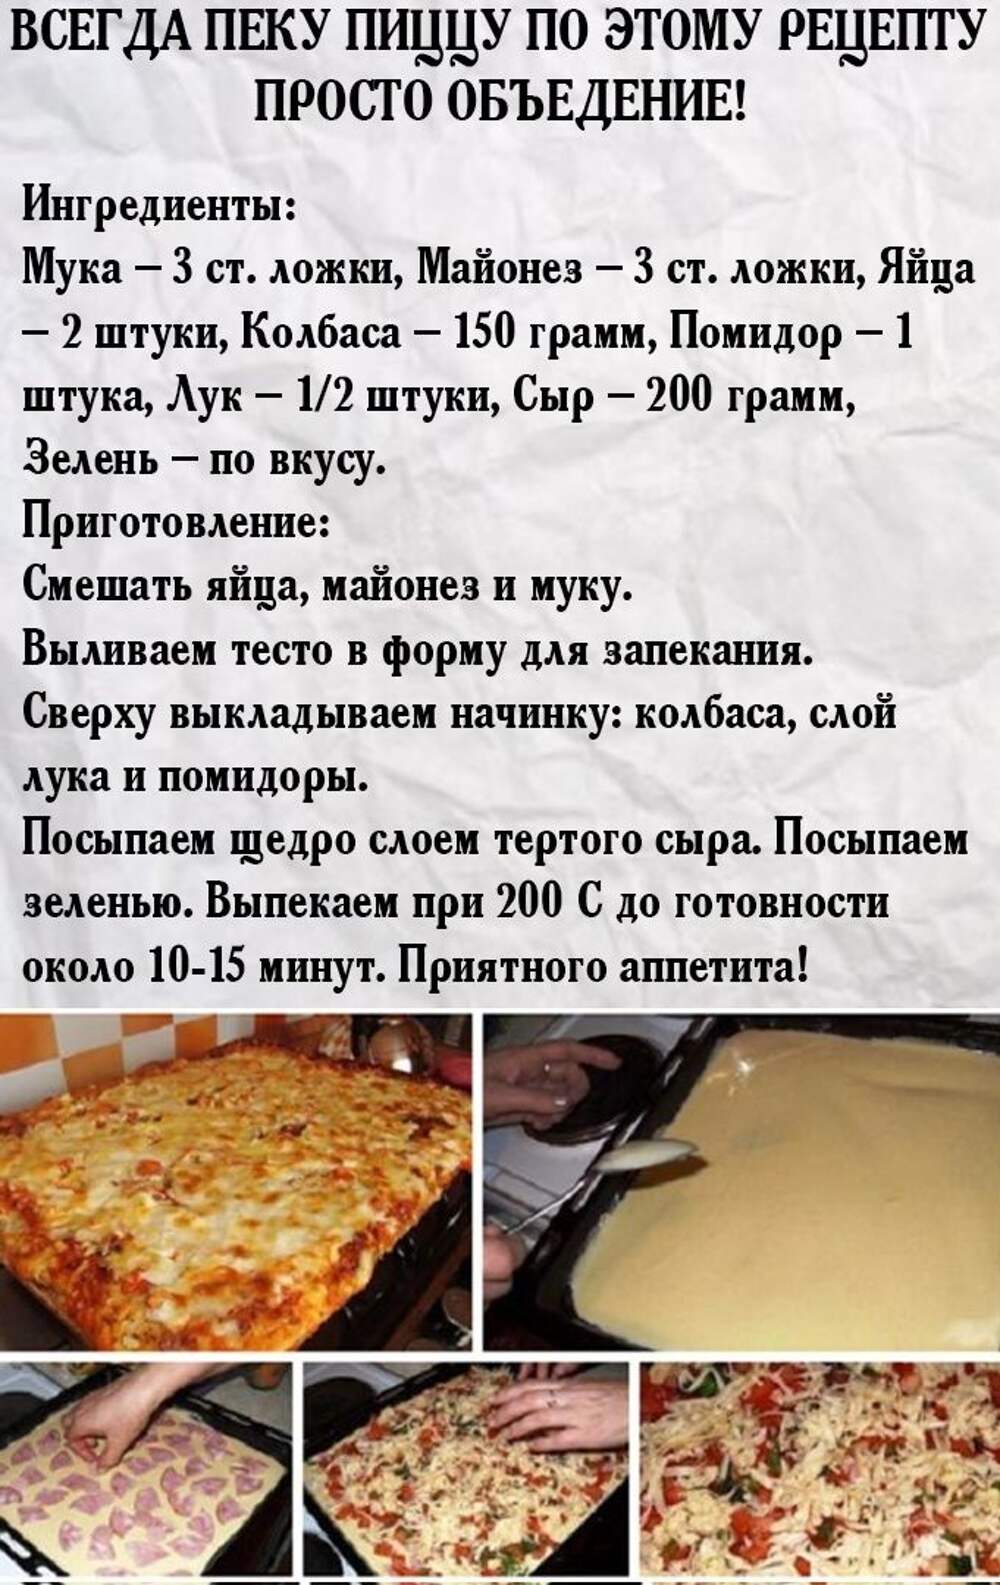 хороший и вкусный рецепт пиццы (120) фото